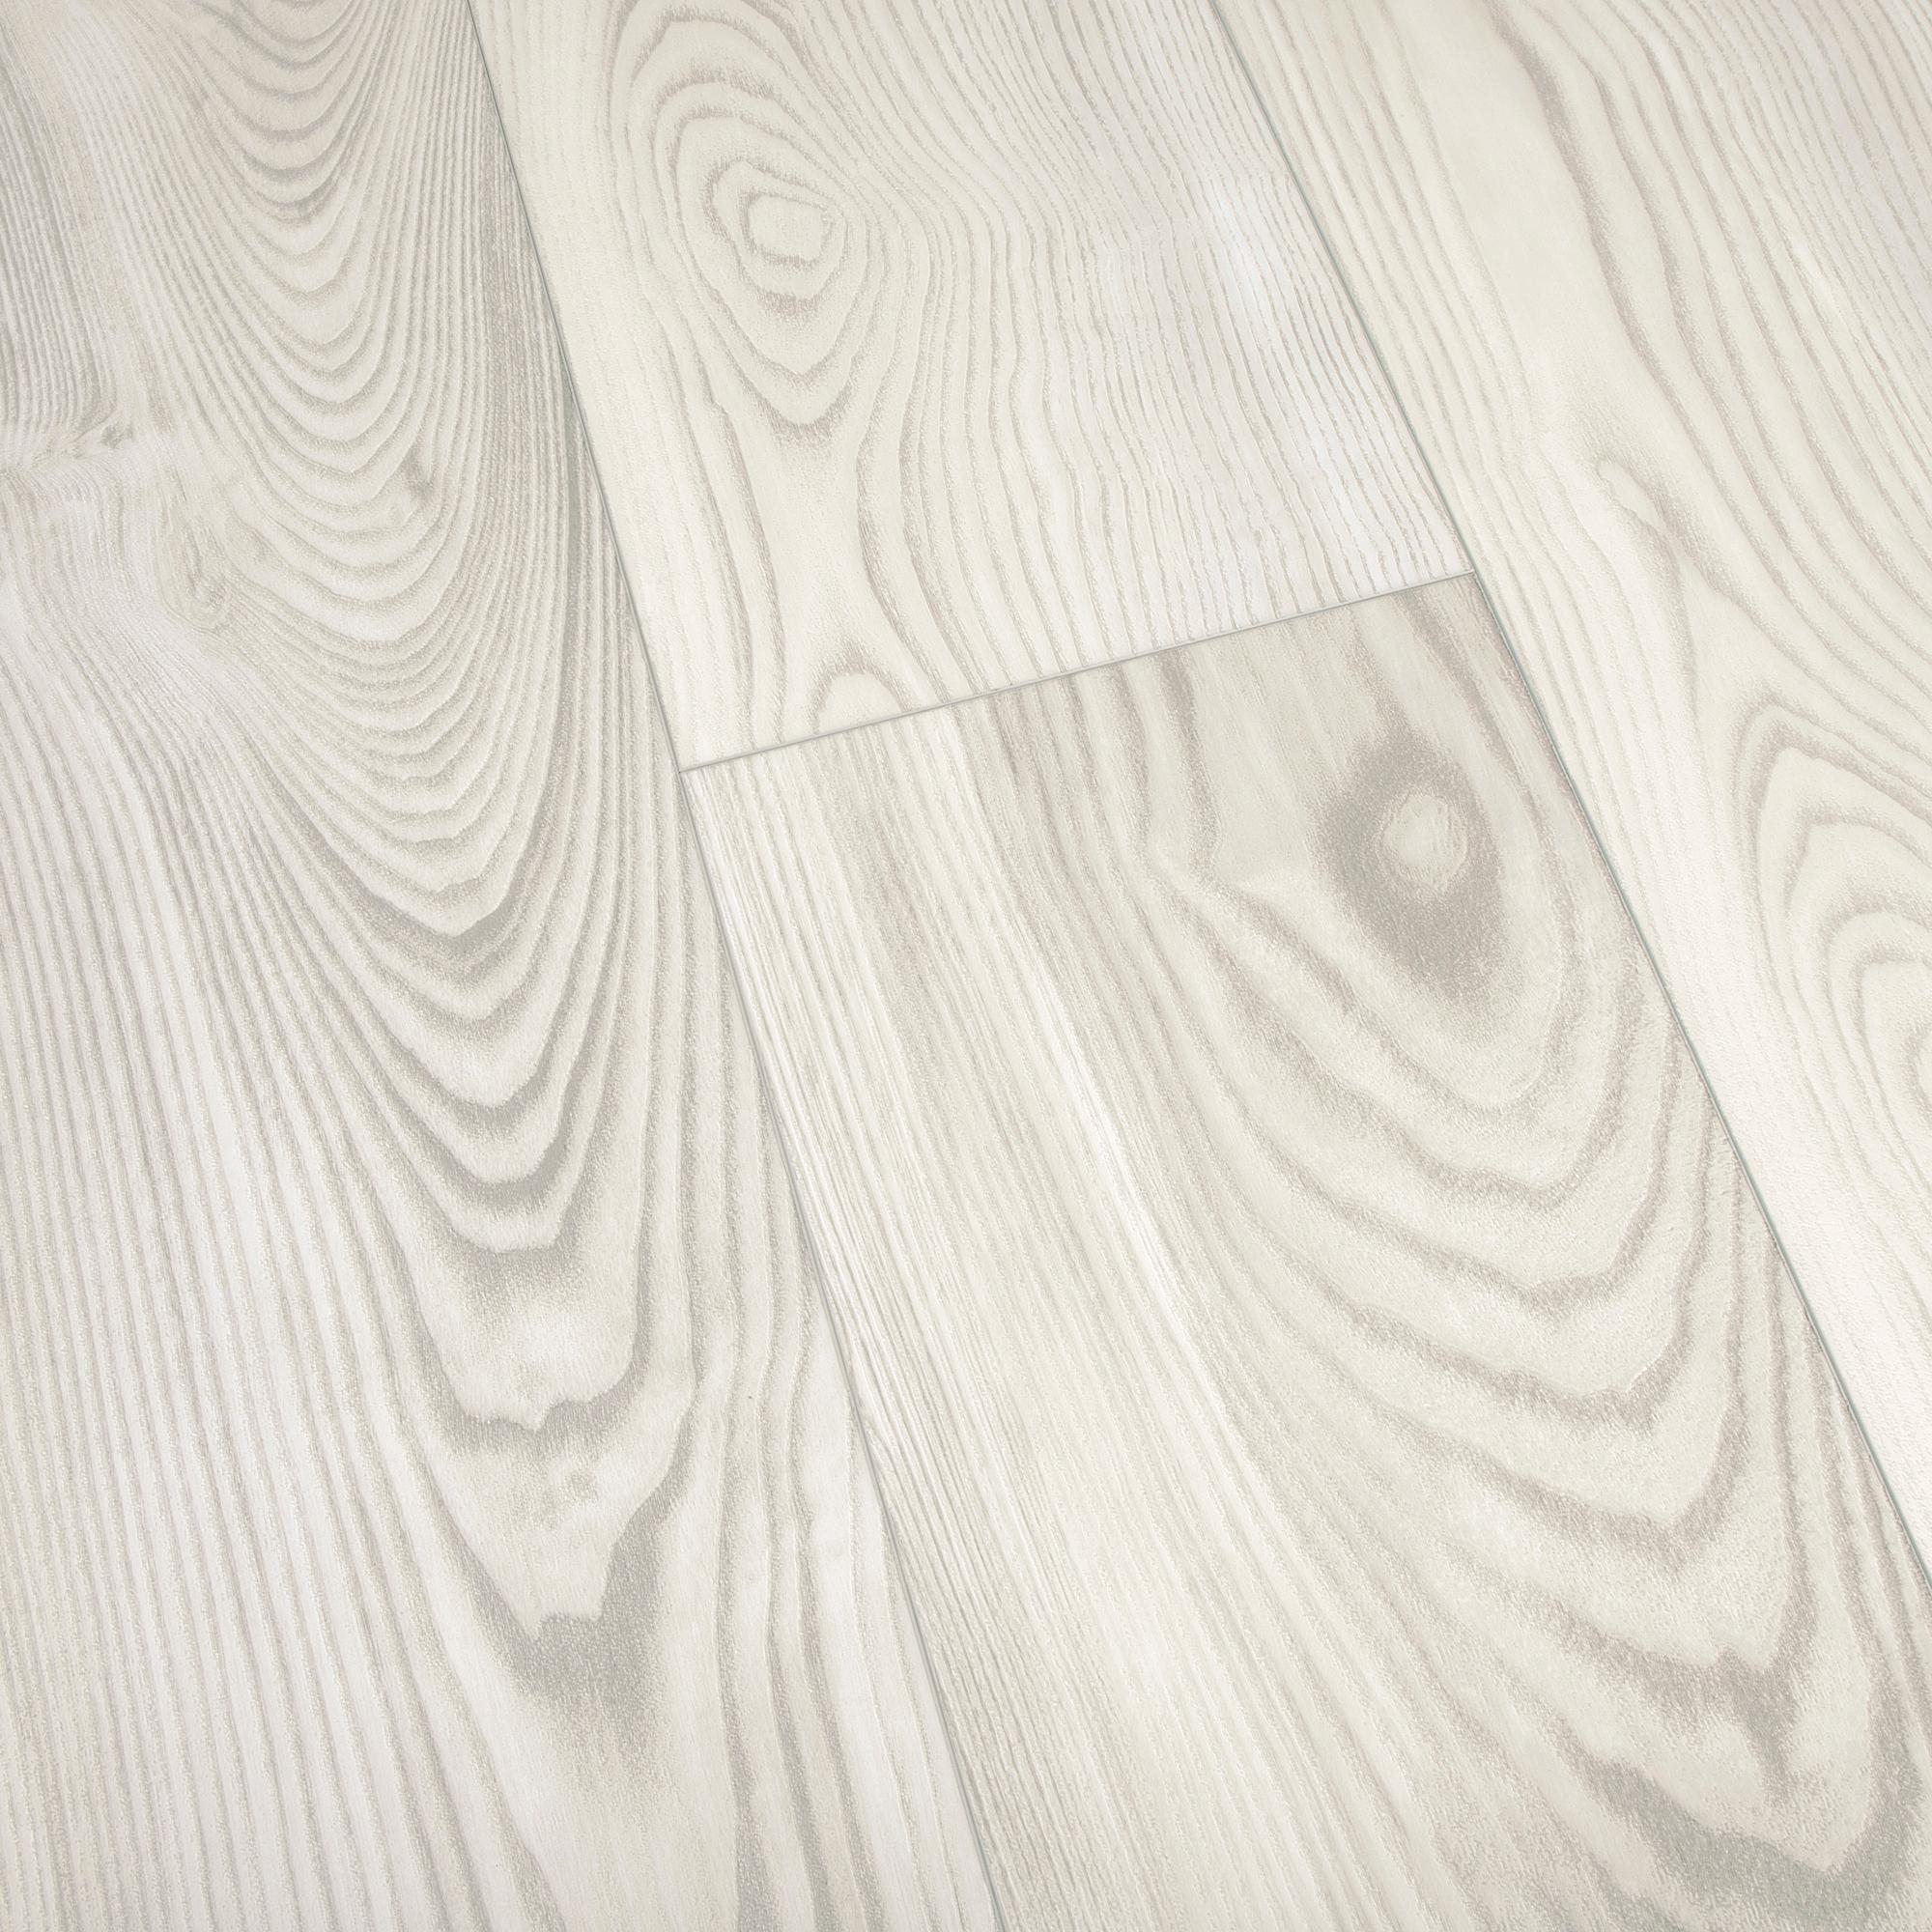 VEELIKE Coastal White Wood Vinyl Plank Flooring 6''x36'' – Veelike